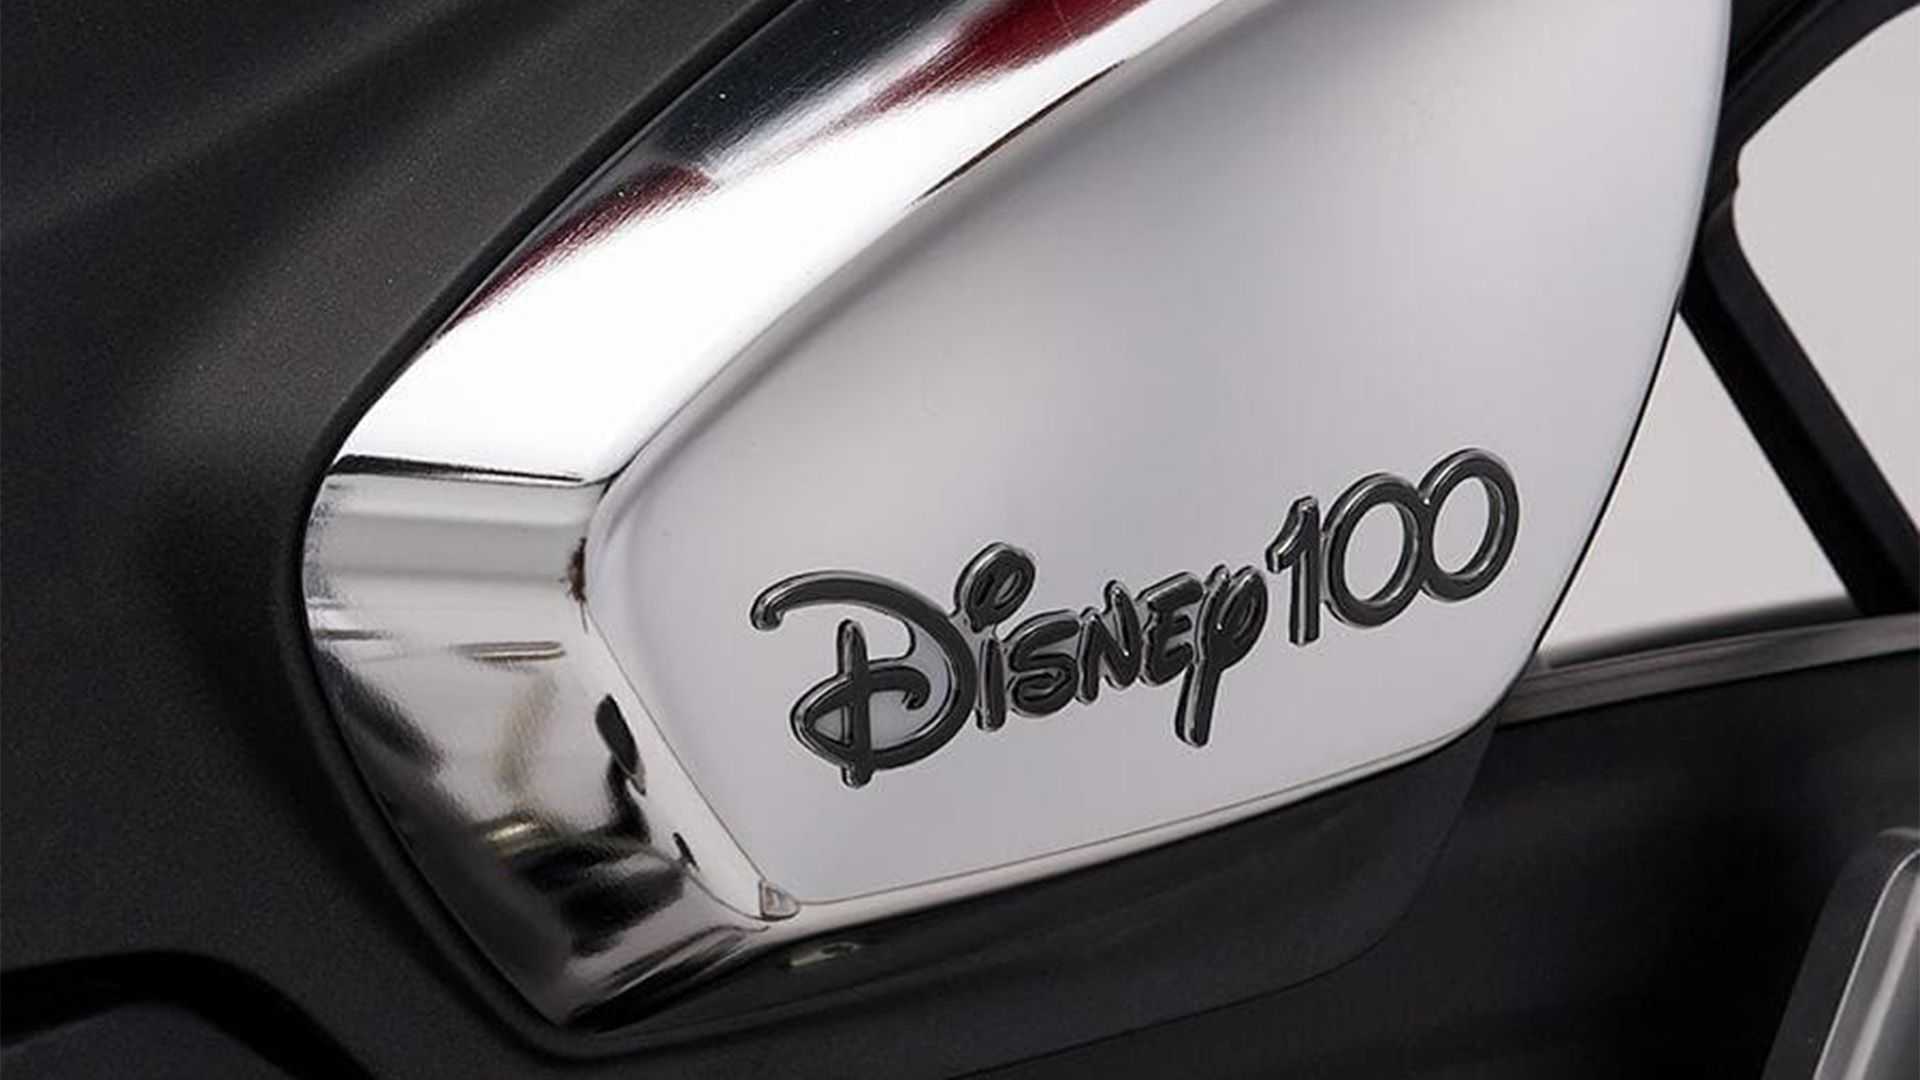 New Honda Super Cub 125 Disney Edition Makes Official Debut - right